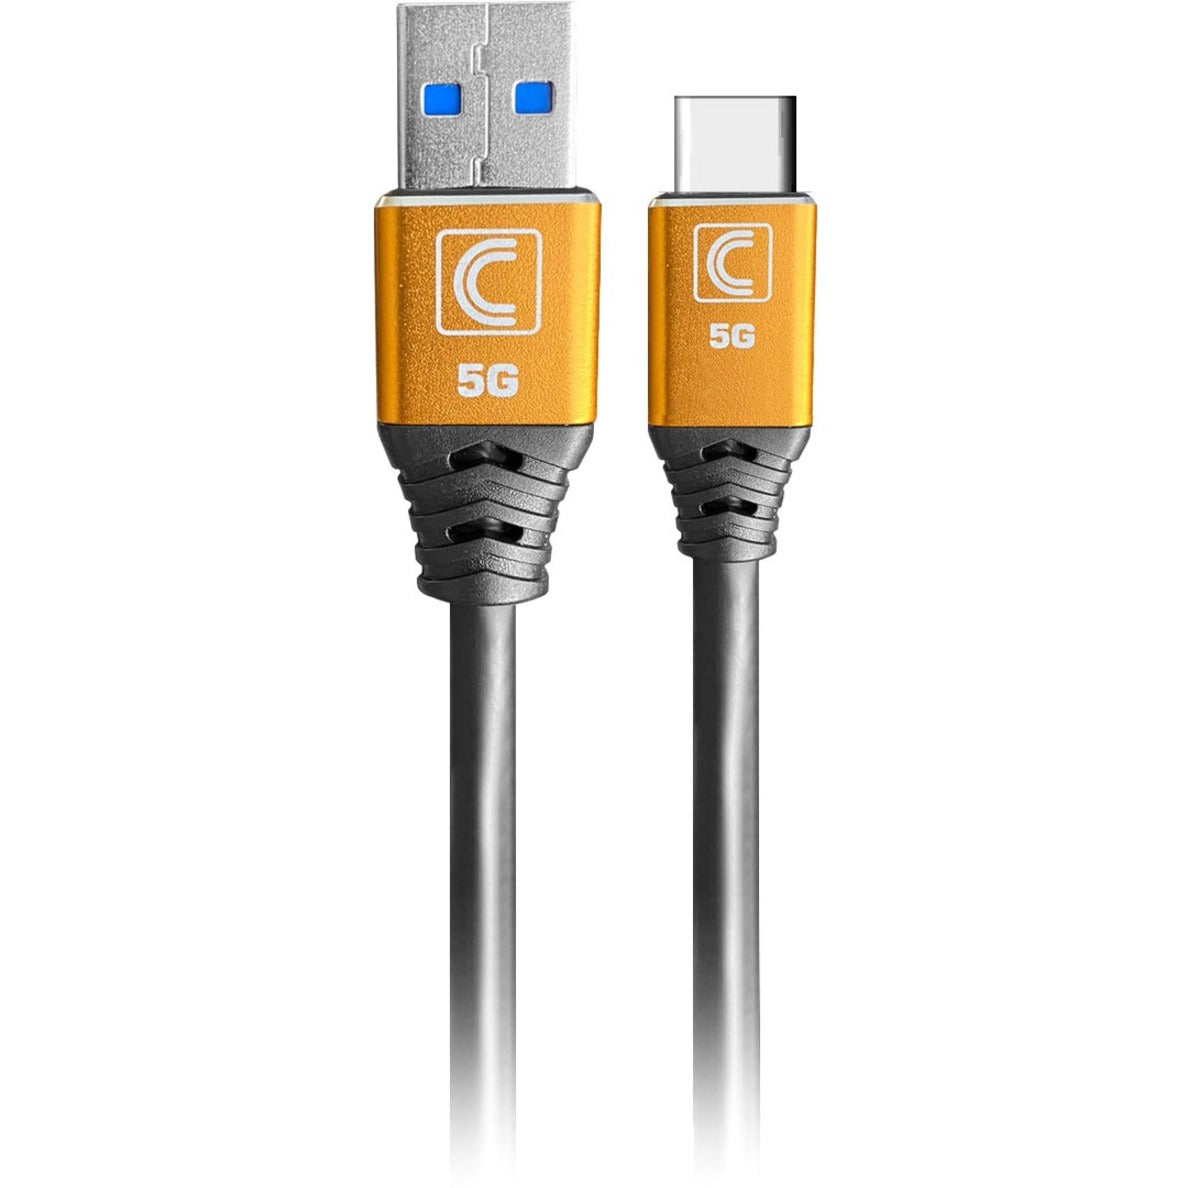 Comprehensive USB3-AC-15SP Pro AV/IT Especialista Serie USB 3.0 (32 Gen1) 5G Un macho a C Macho Cable 15ft Alivio de tensión Flexible Triple Blindado. Marca: Integral. Traducción de marca: Integral.